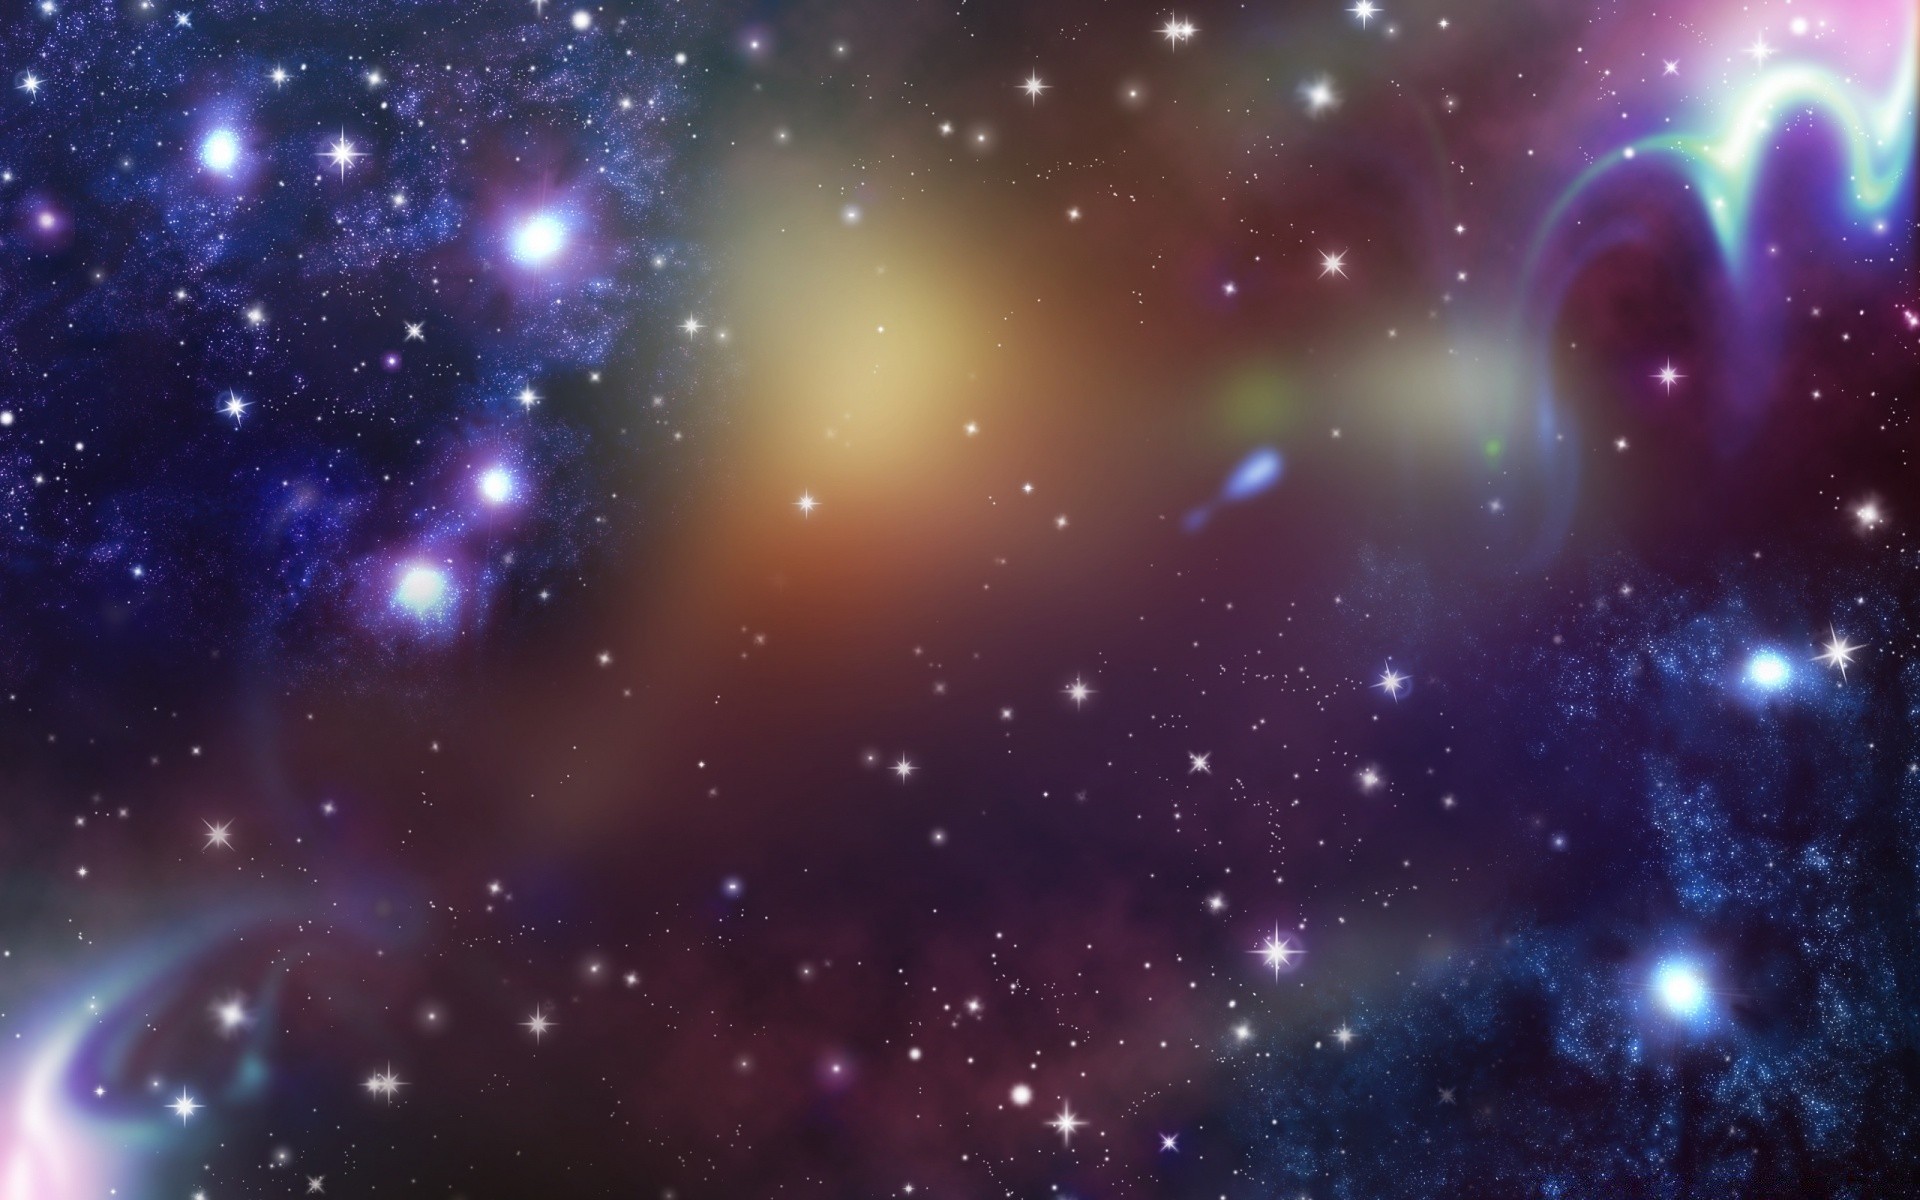 космос астрономия созвездие галактика туманность бесконечность астрология разведка пыль стеллар огромный сверхновая глубокий космос фантазия внешний небесные тайна планеты телескоп